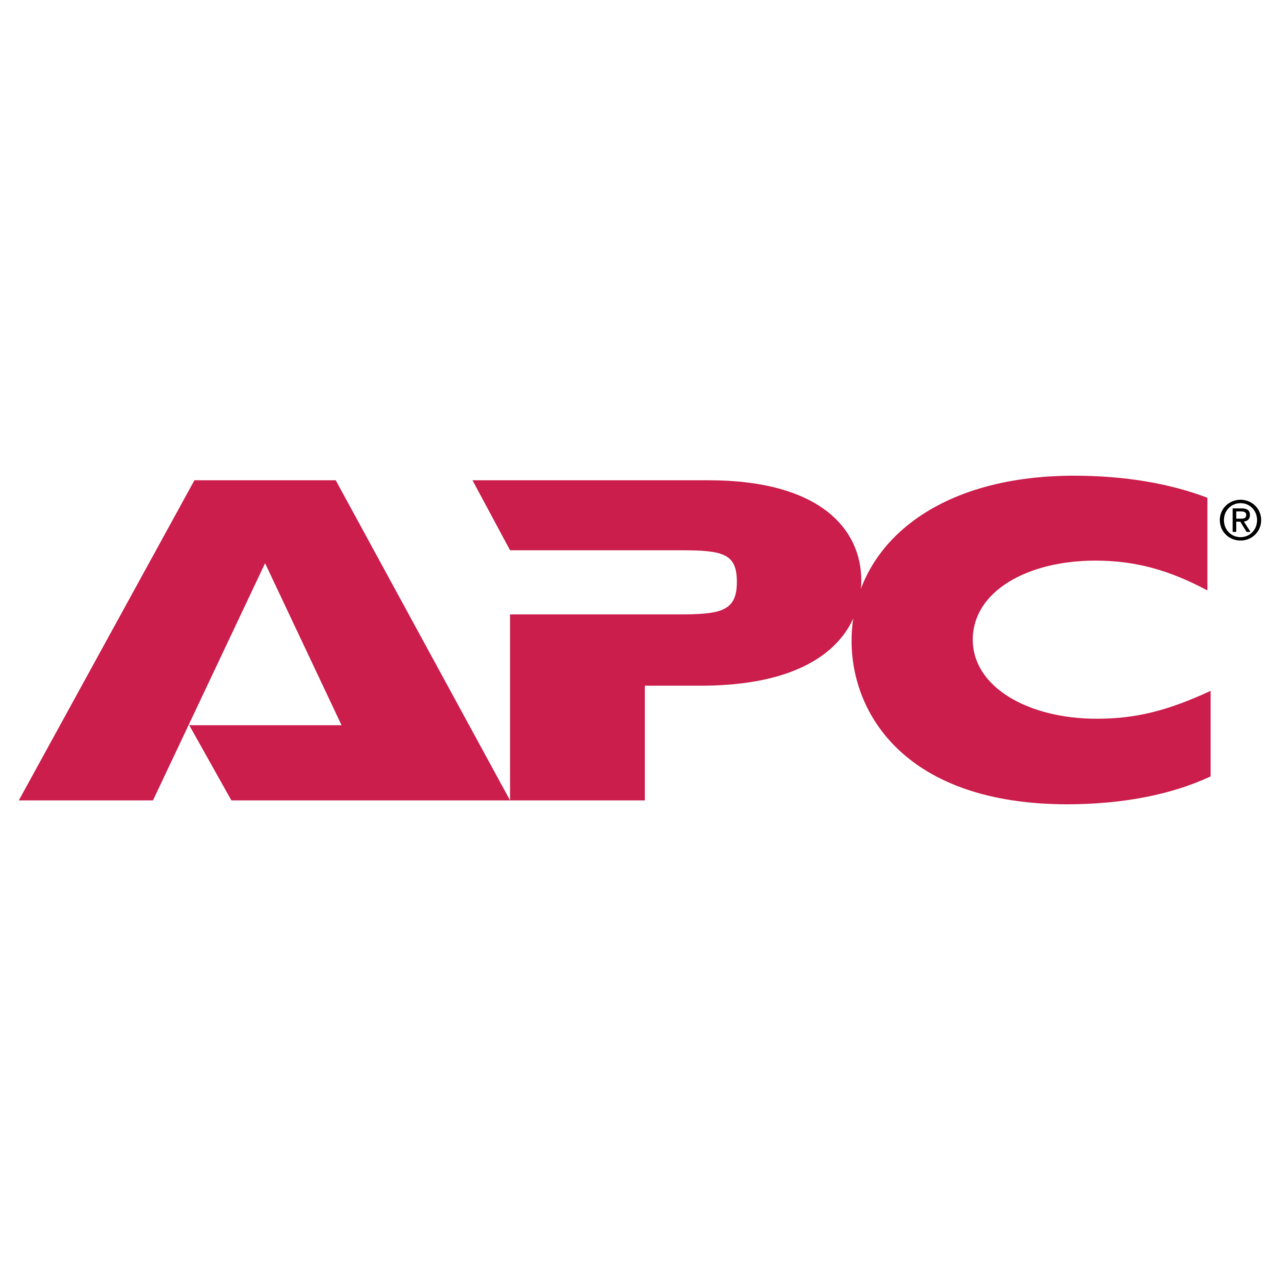 ICE - apc-logo